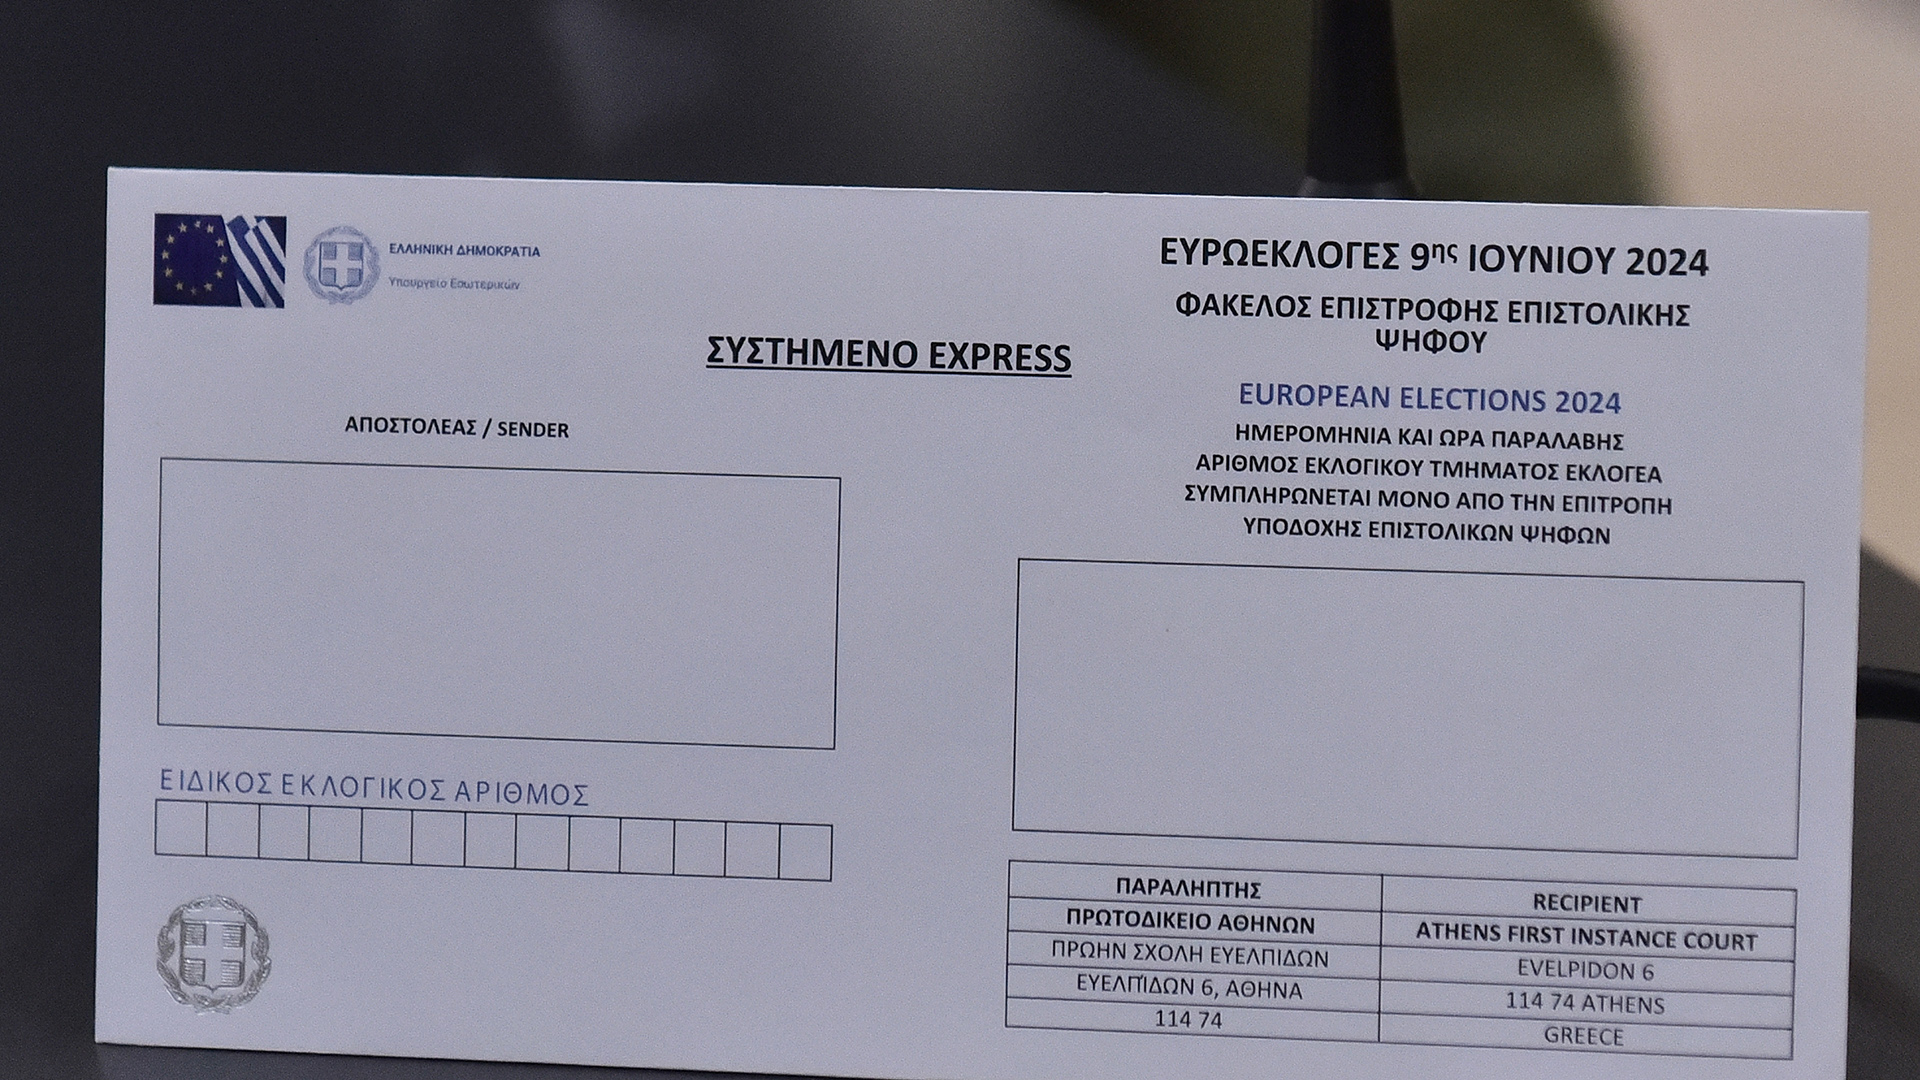 Ξεκινούν τη Δευτέρα οι διαβουλεύσεις για την επιστολική ψήφο με πρώτο τον ΣΥΡΙΖΑ